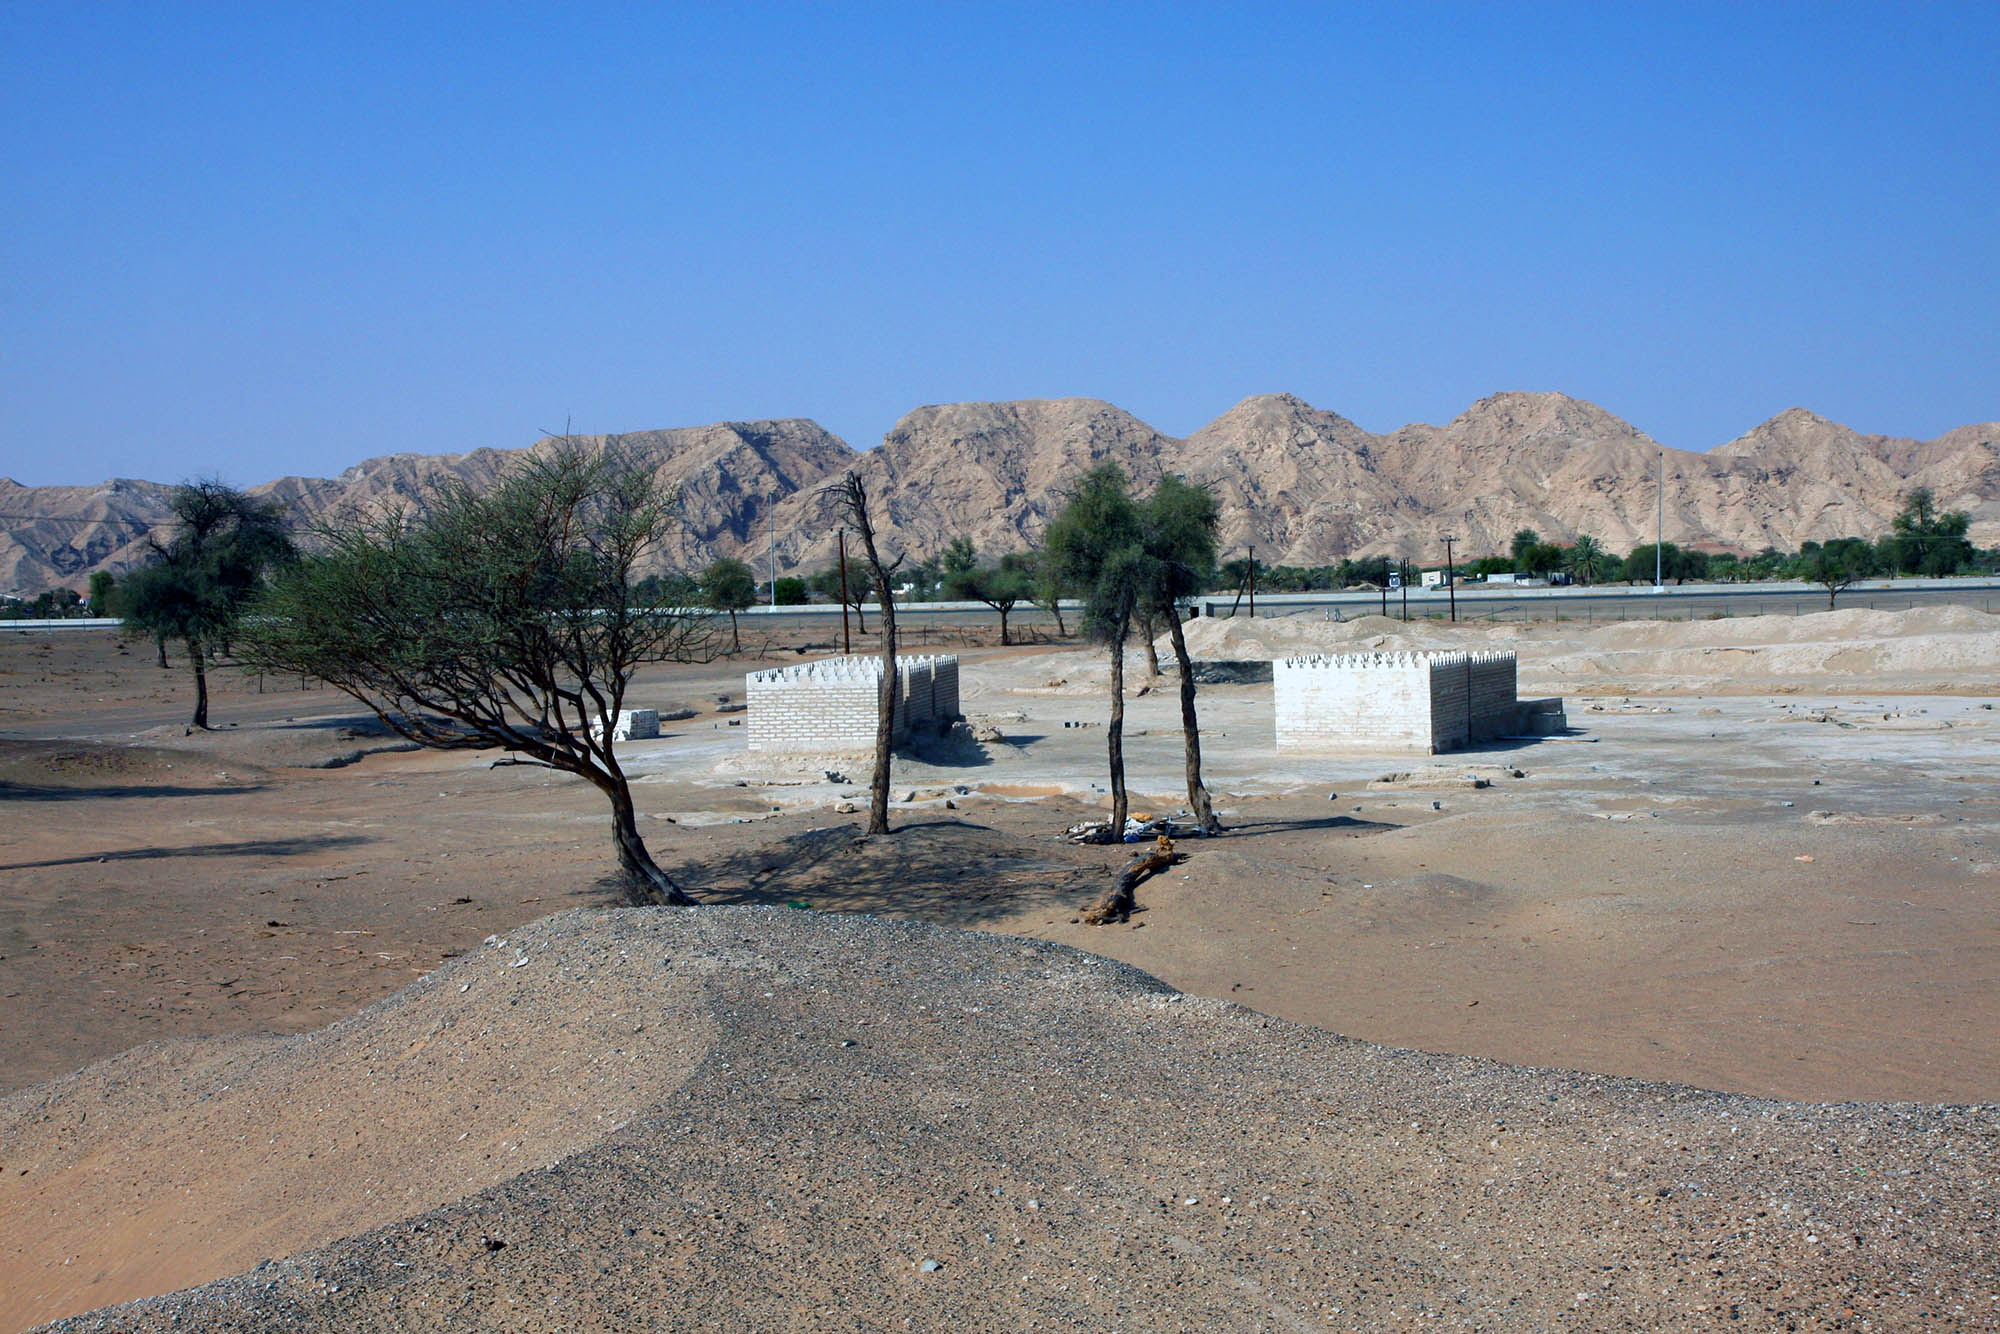 Am Fuße des Jebel Faya befinden sich viele archäologische Stätten, darunter ein Fort, mehrere Grabkammern und weitere Siedlungs- und Bestattungsanlagen.